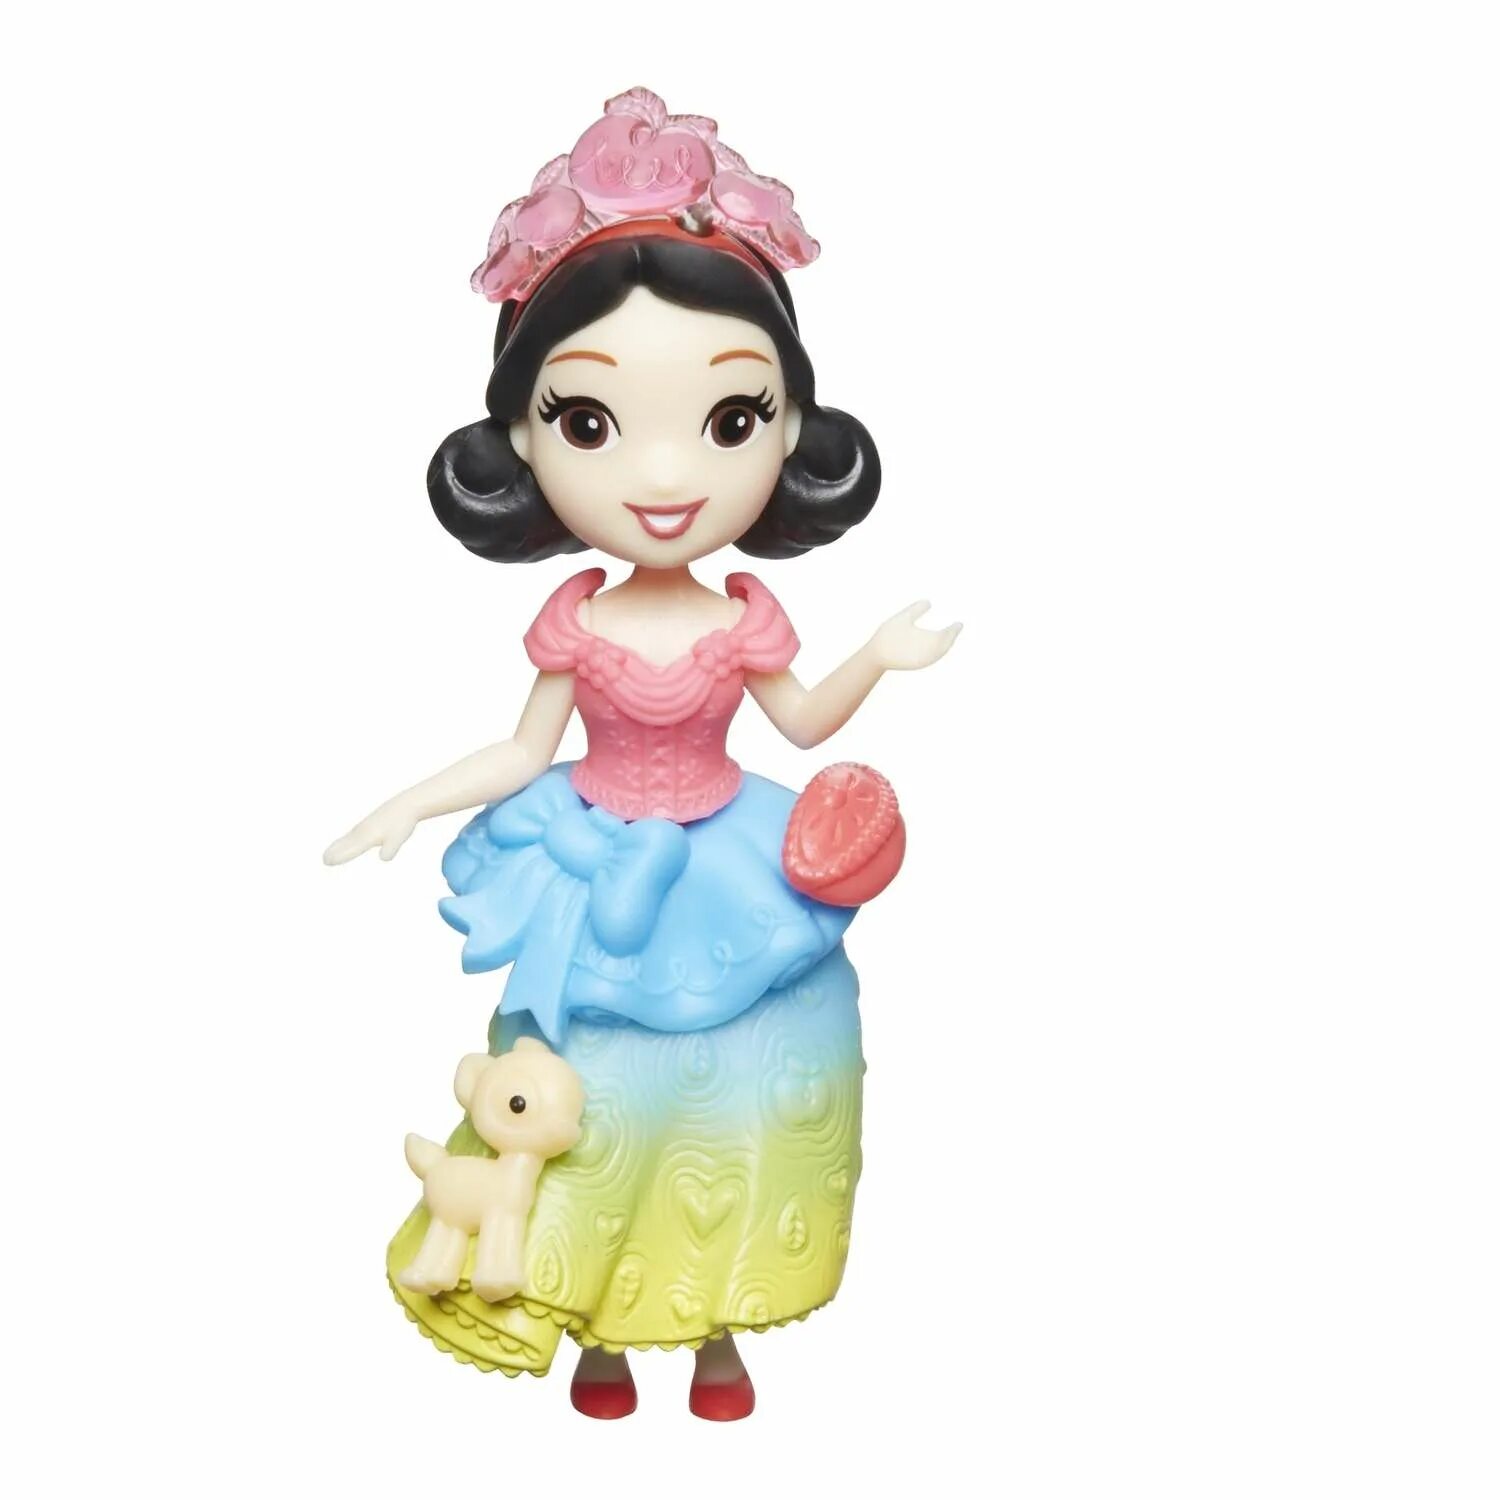 Мини куклы принцессы Дисней Белоснежка. Кукла Disney Princess Hasbro Белоснежка. Белоснежка кукла Disney Минни. Куклы Дисней Хасбро мини Белоснежка. Белоснежка маленькая